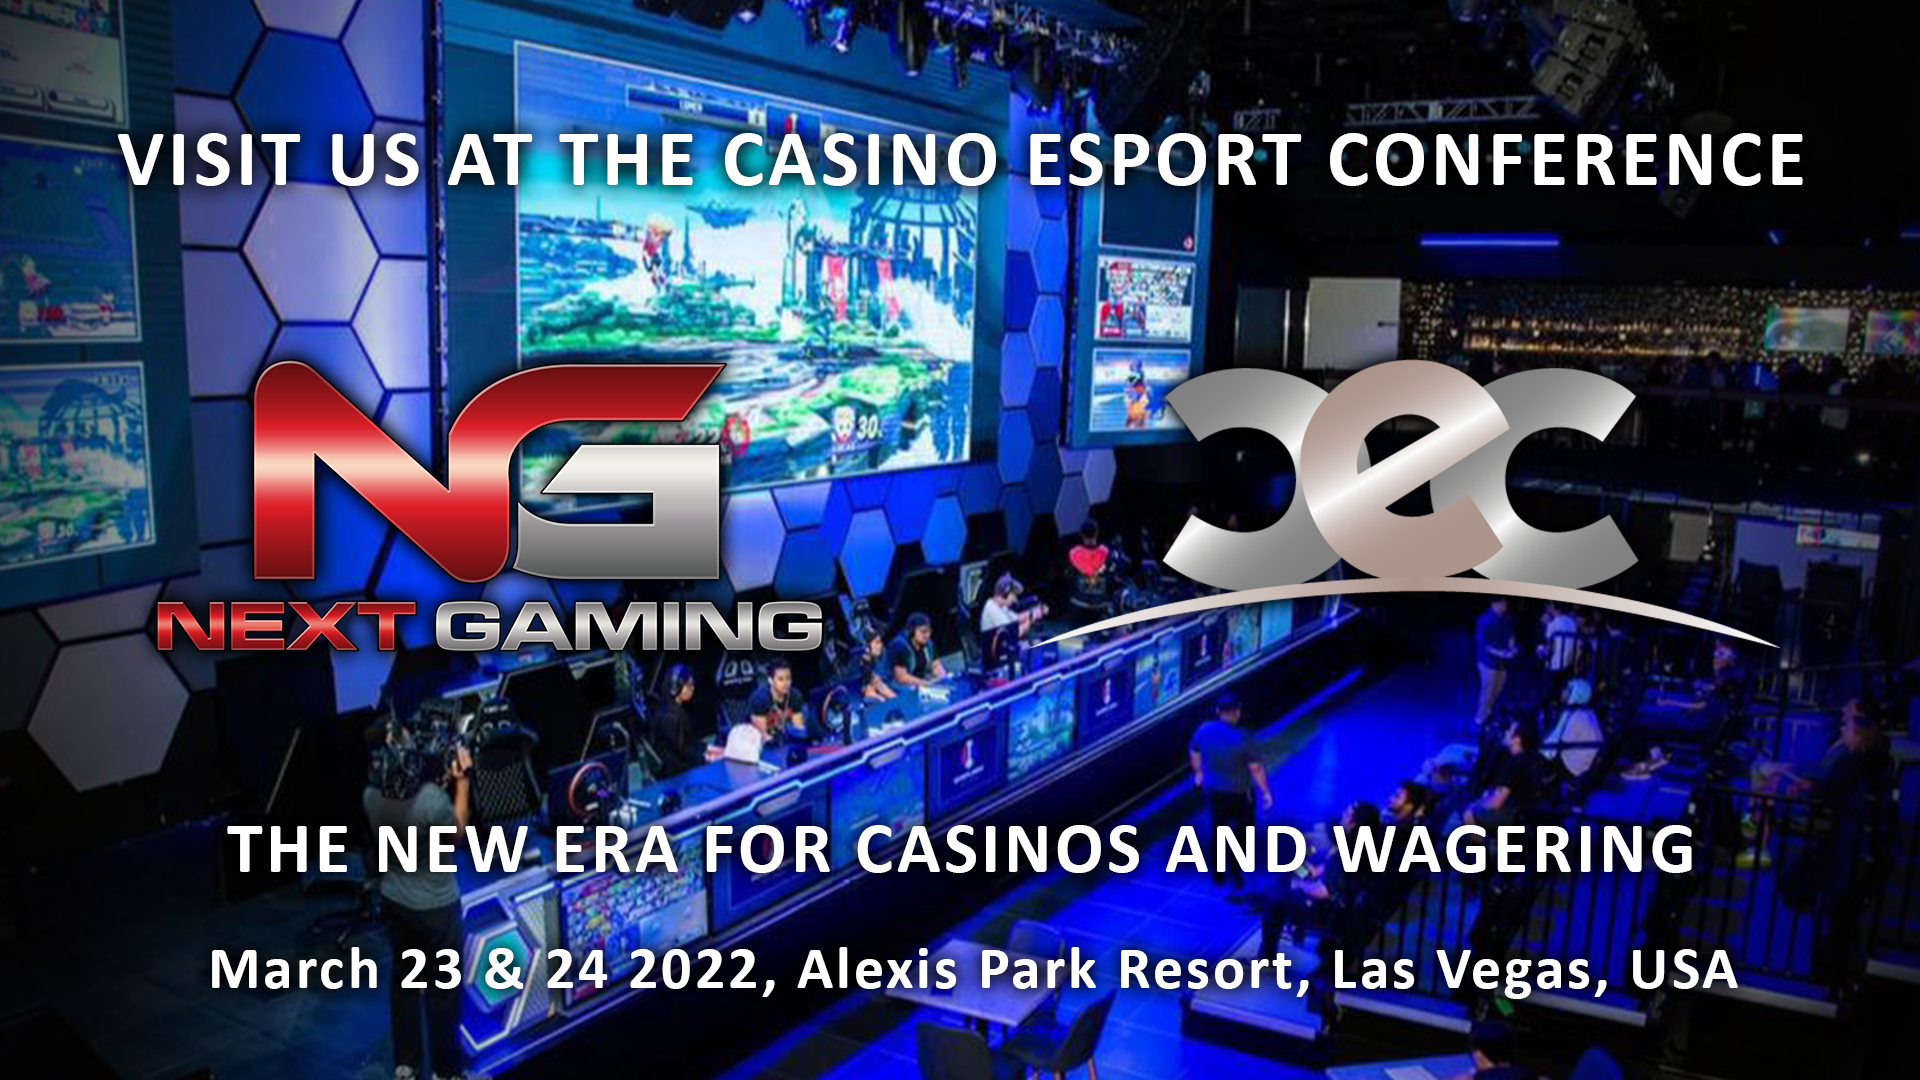 Casino Esports Conference 2022